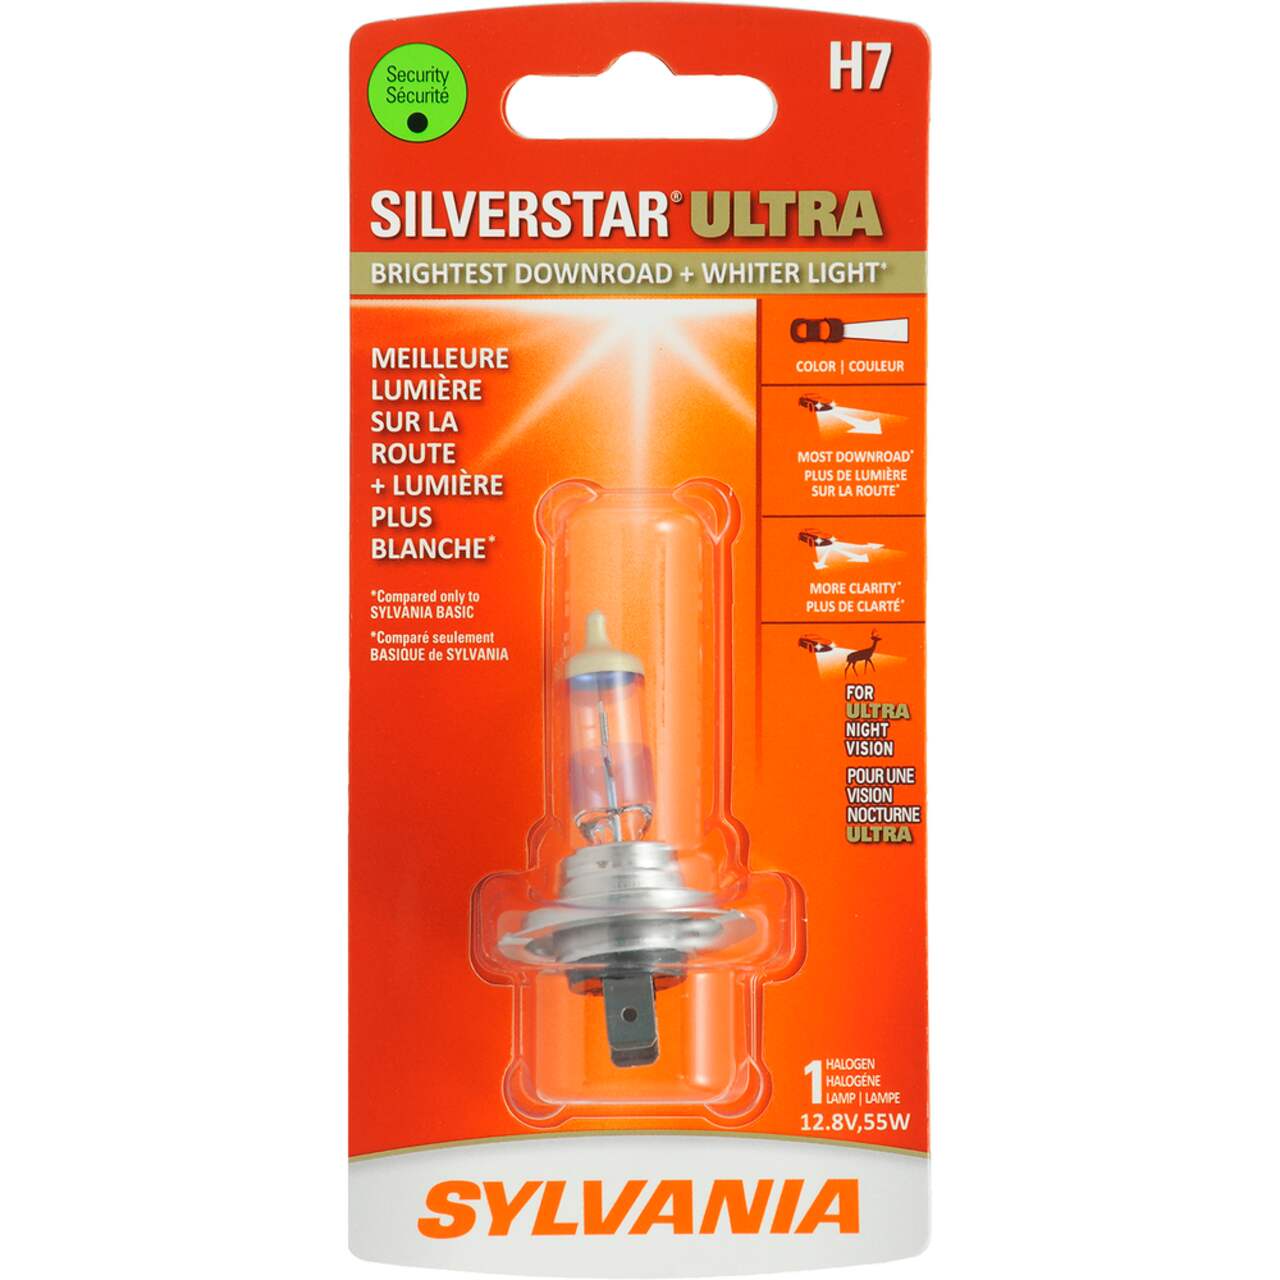 H7 Sylvania SilverStar® ULTRA Halogen Headlight Bulb, Whiter Light